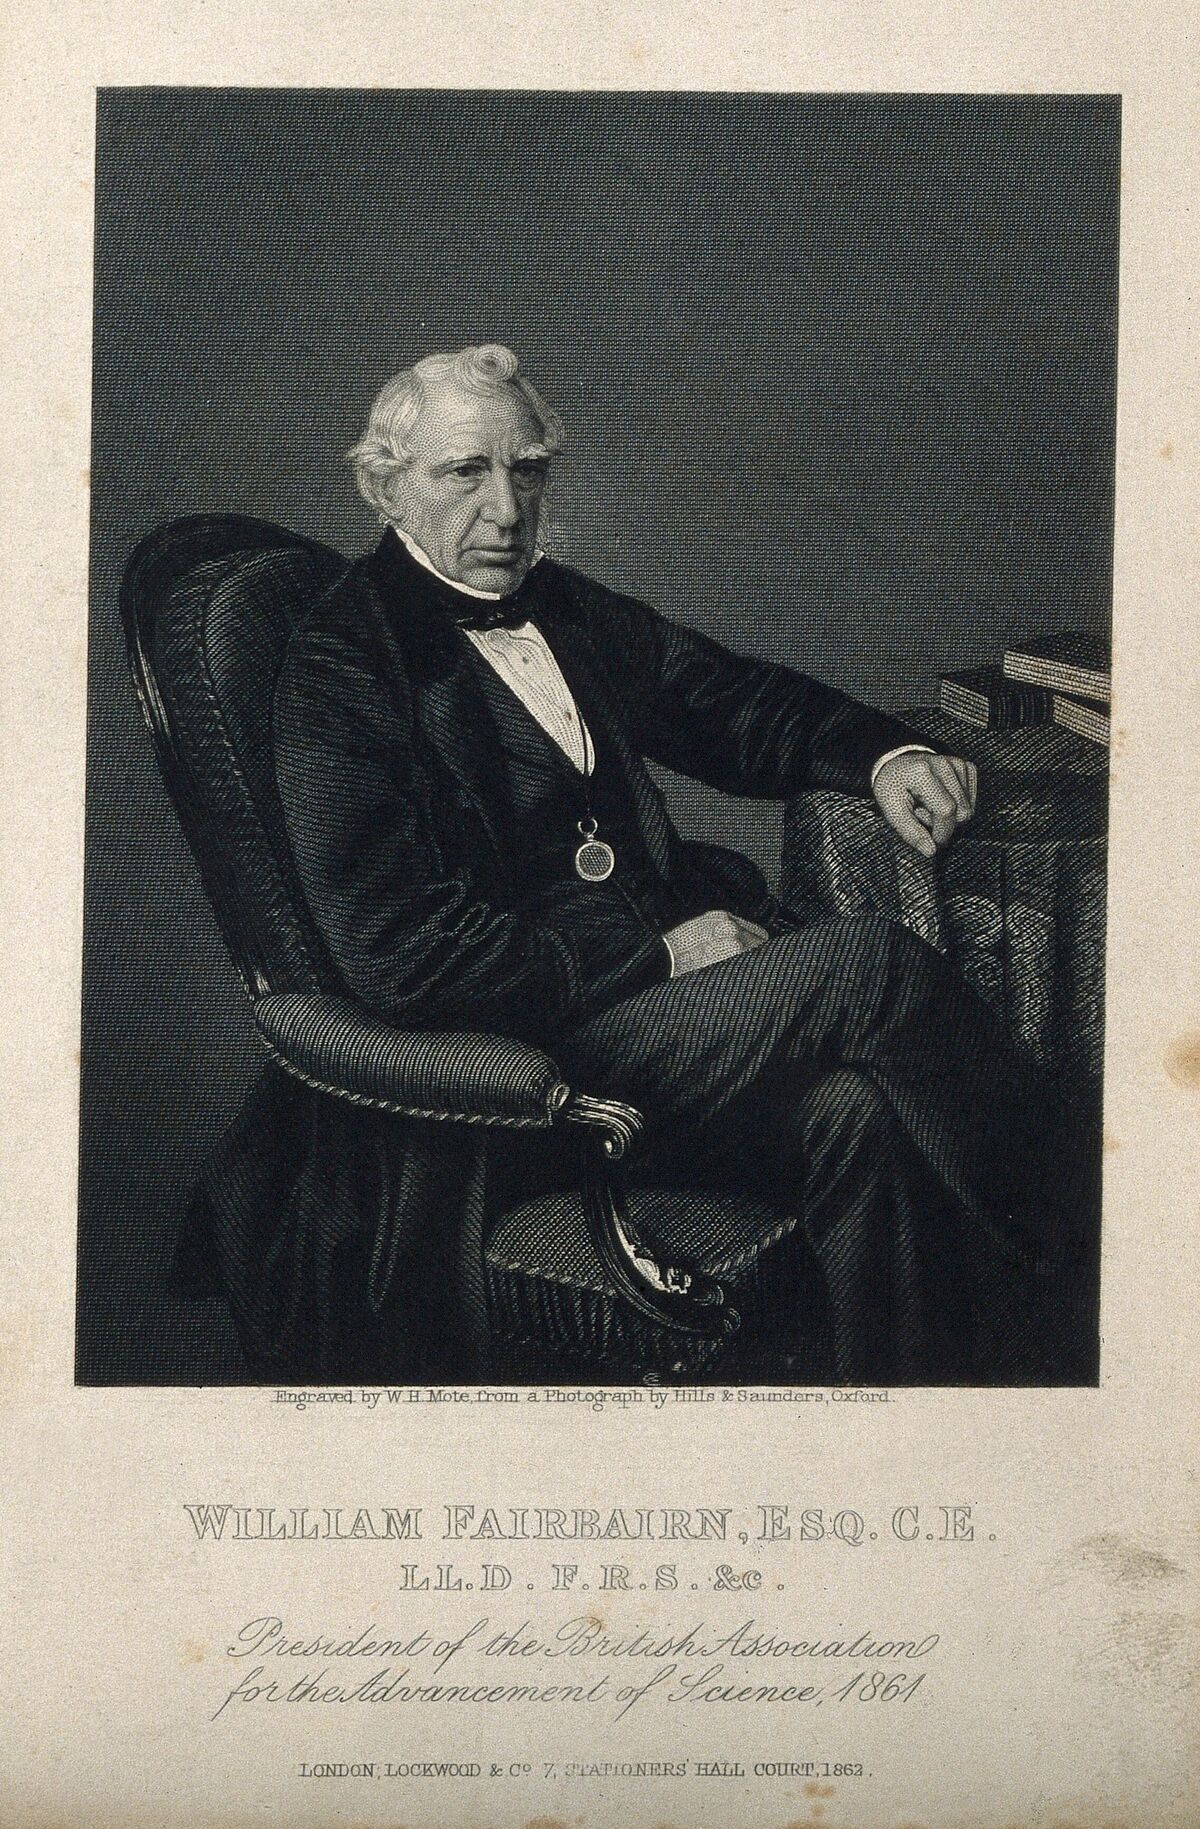 GFD 1/86: William Fairbairn (Stich von William Henry Mote nach Fotografie von Hills & Saunders, 1862)